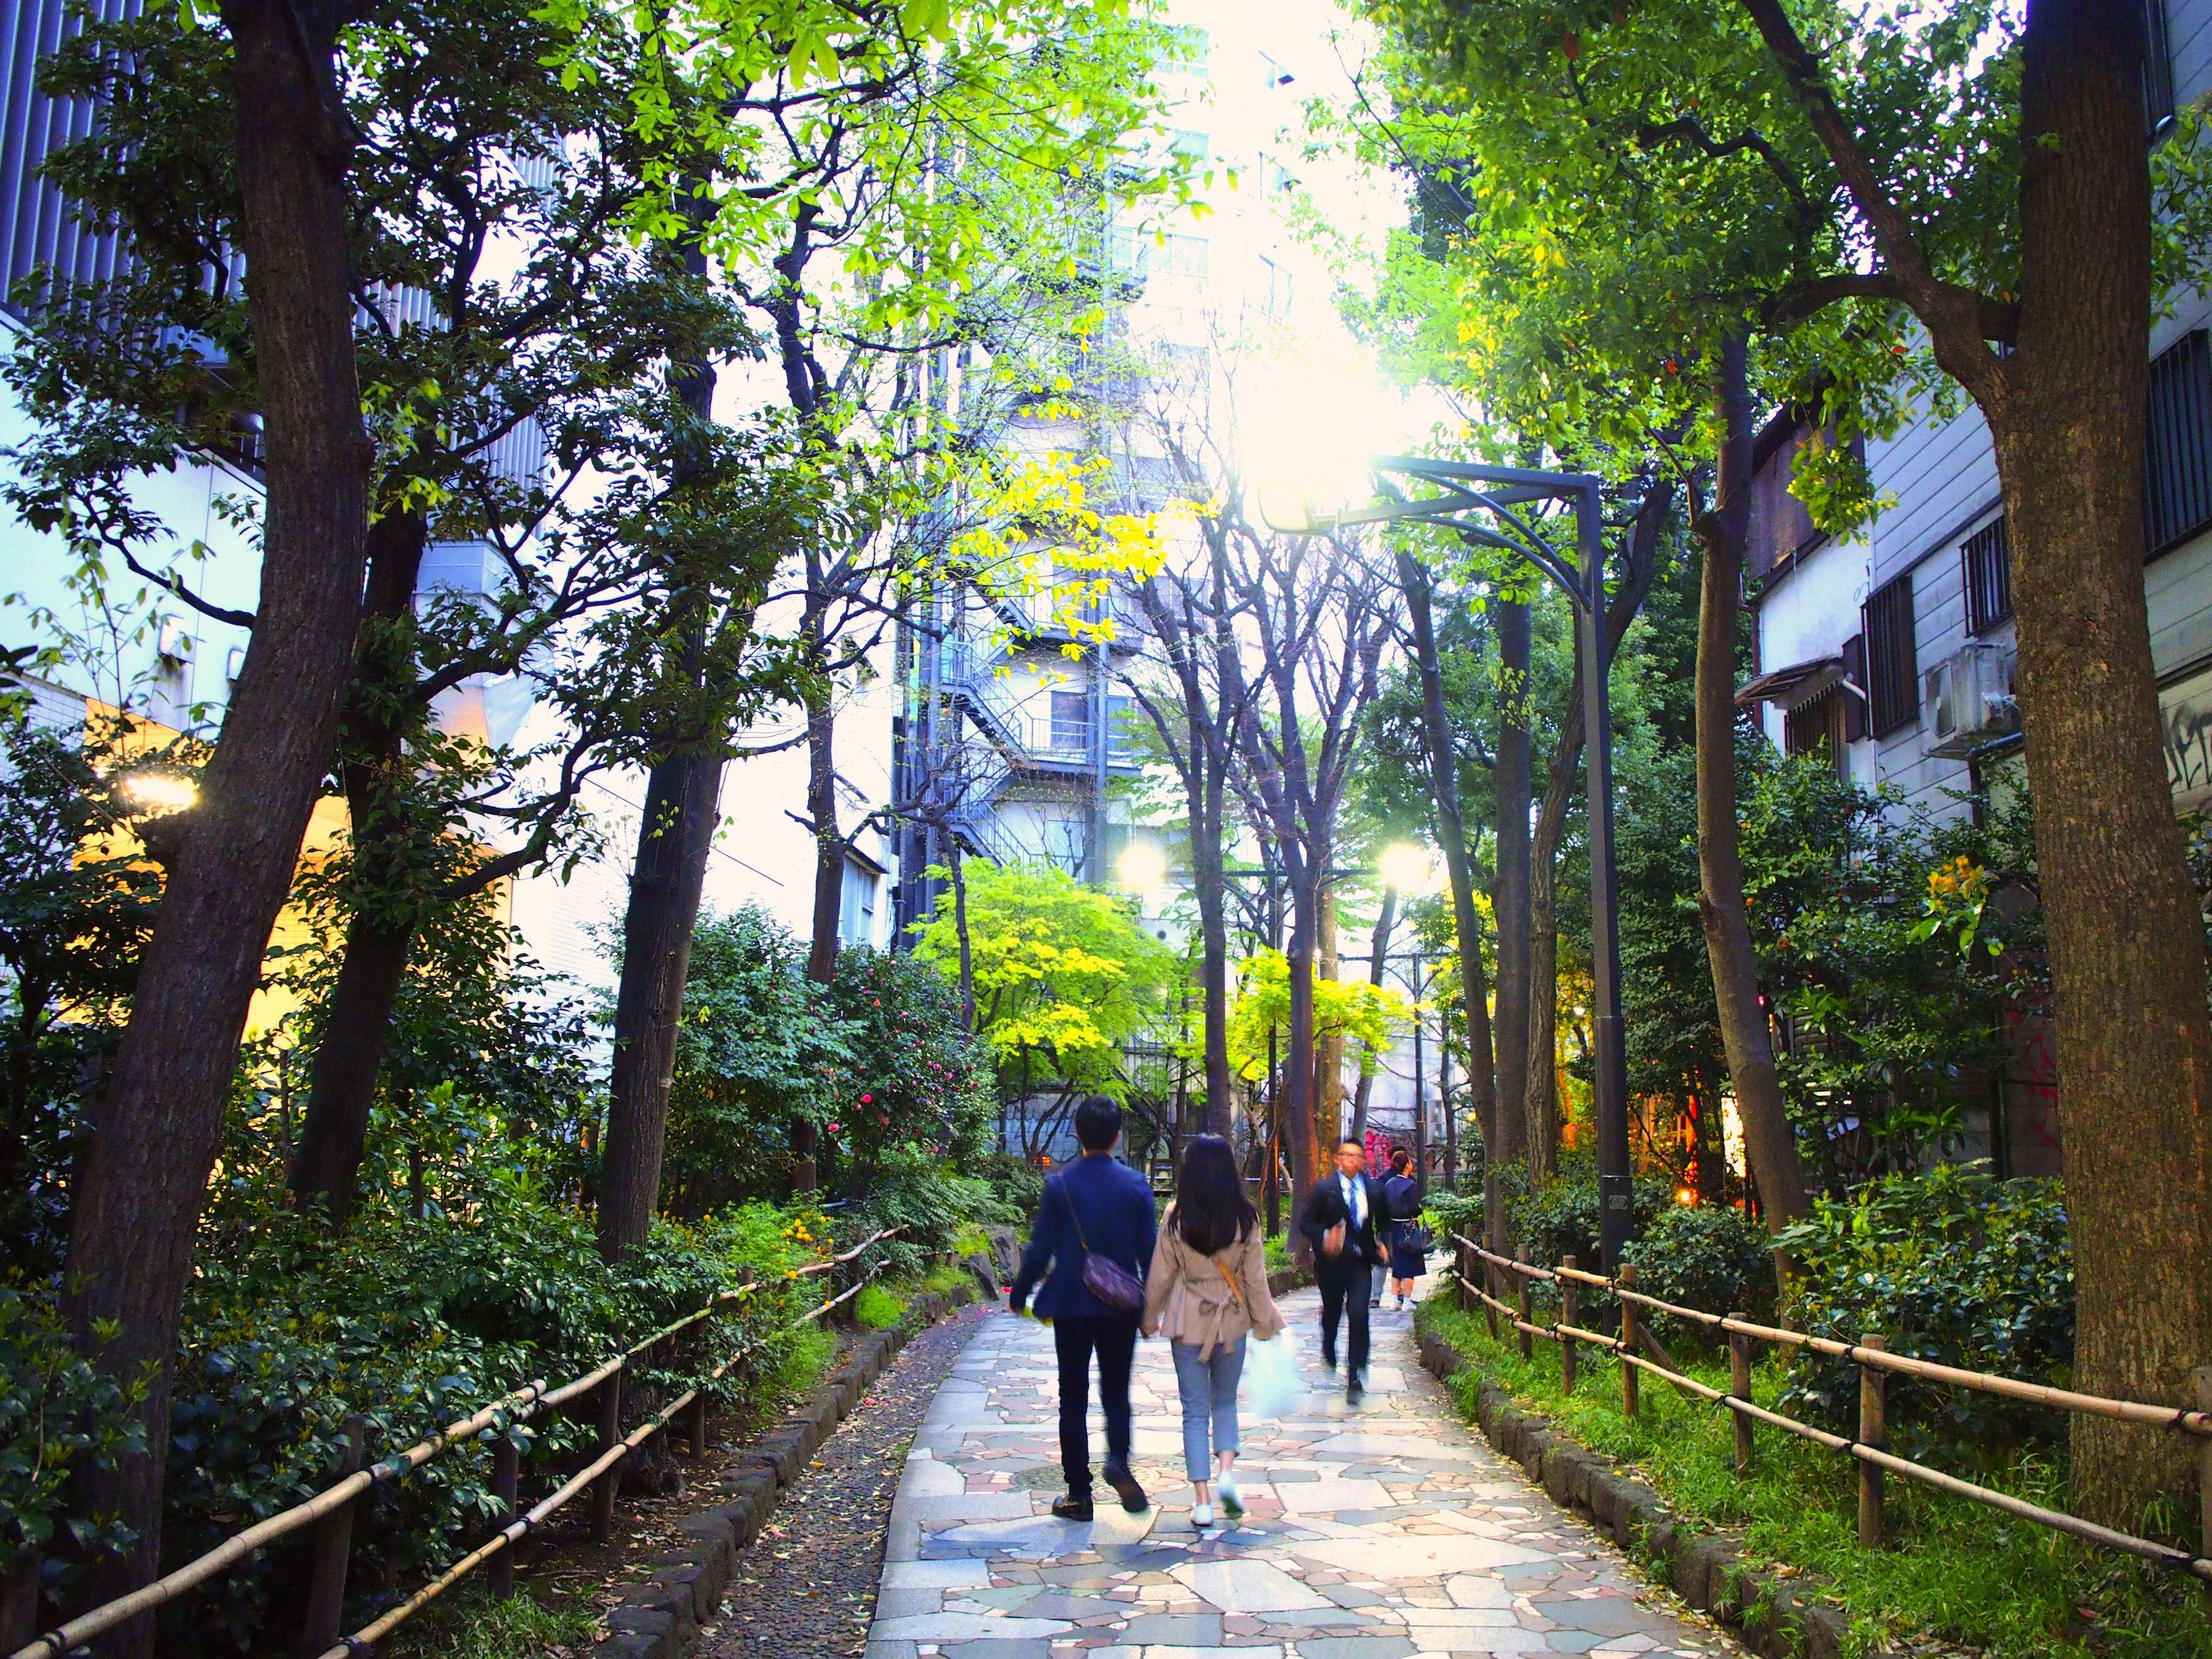 新宿遊歩道公園「四季の路」